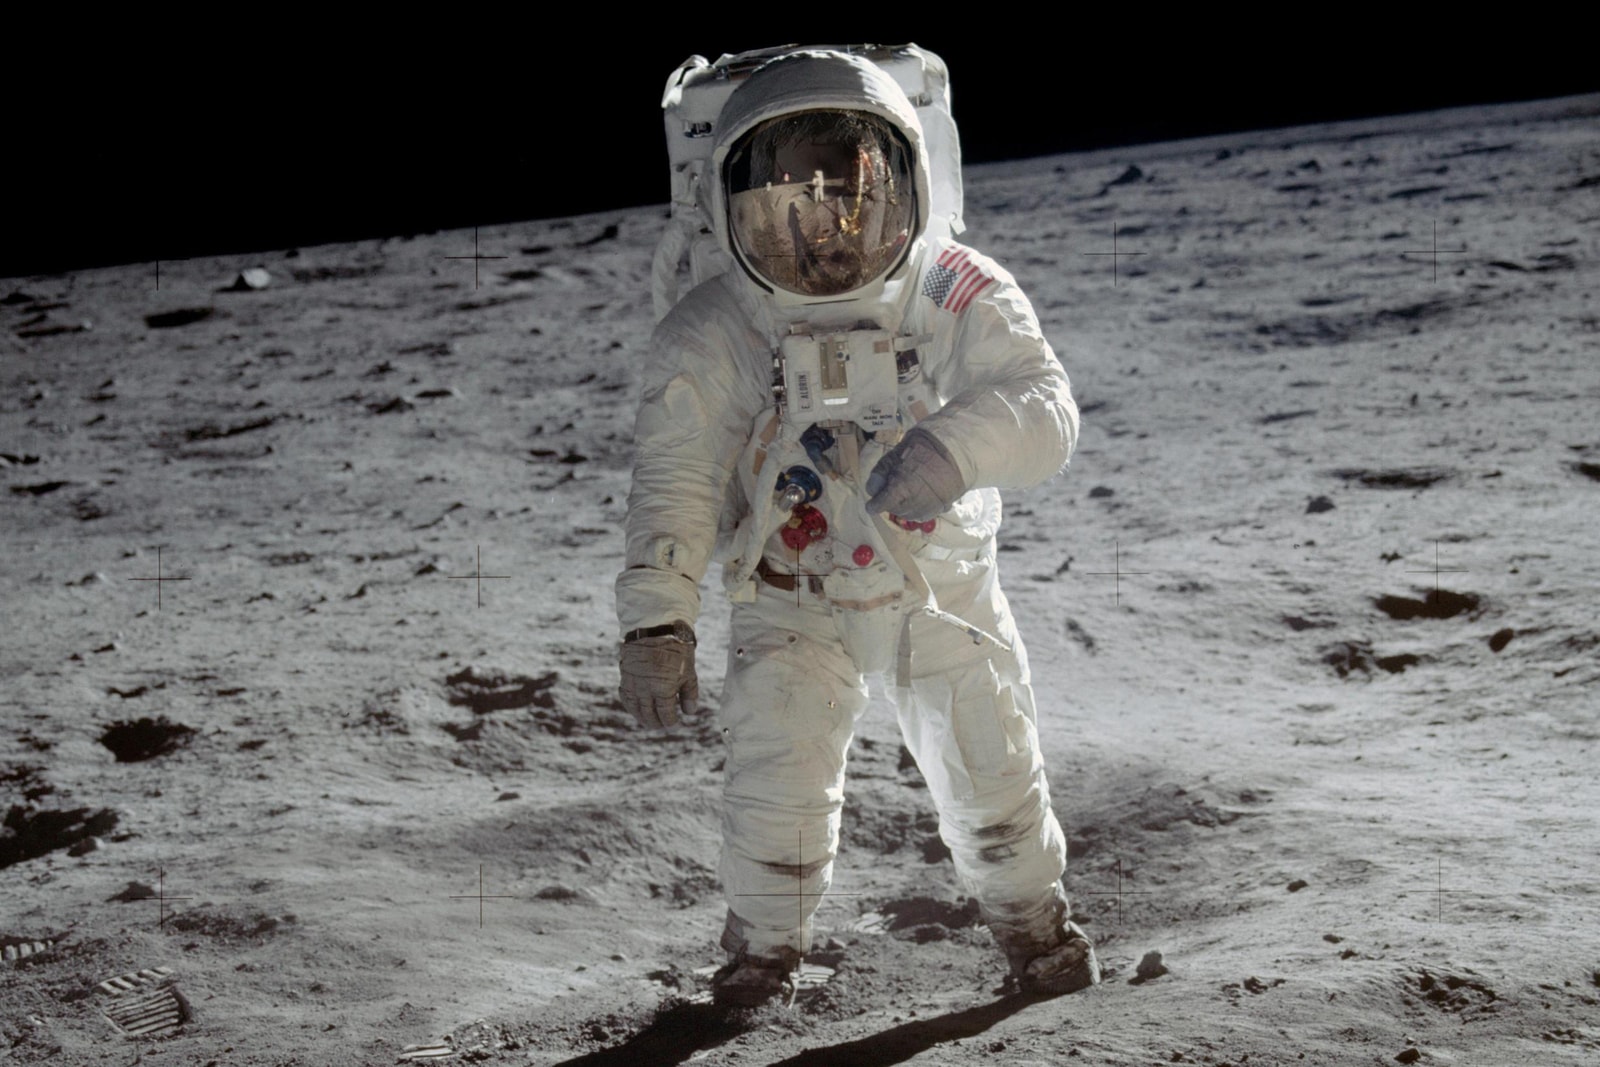 OMEGA Speedmaster 60 週年慶－HYPEBEAST 專訪登月太空人 Buzz Aldrin